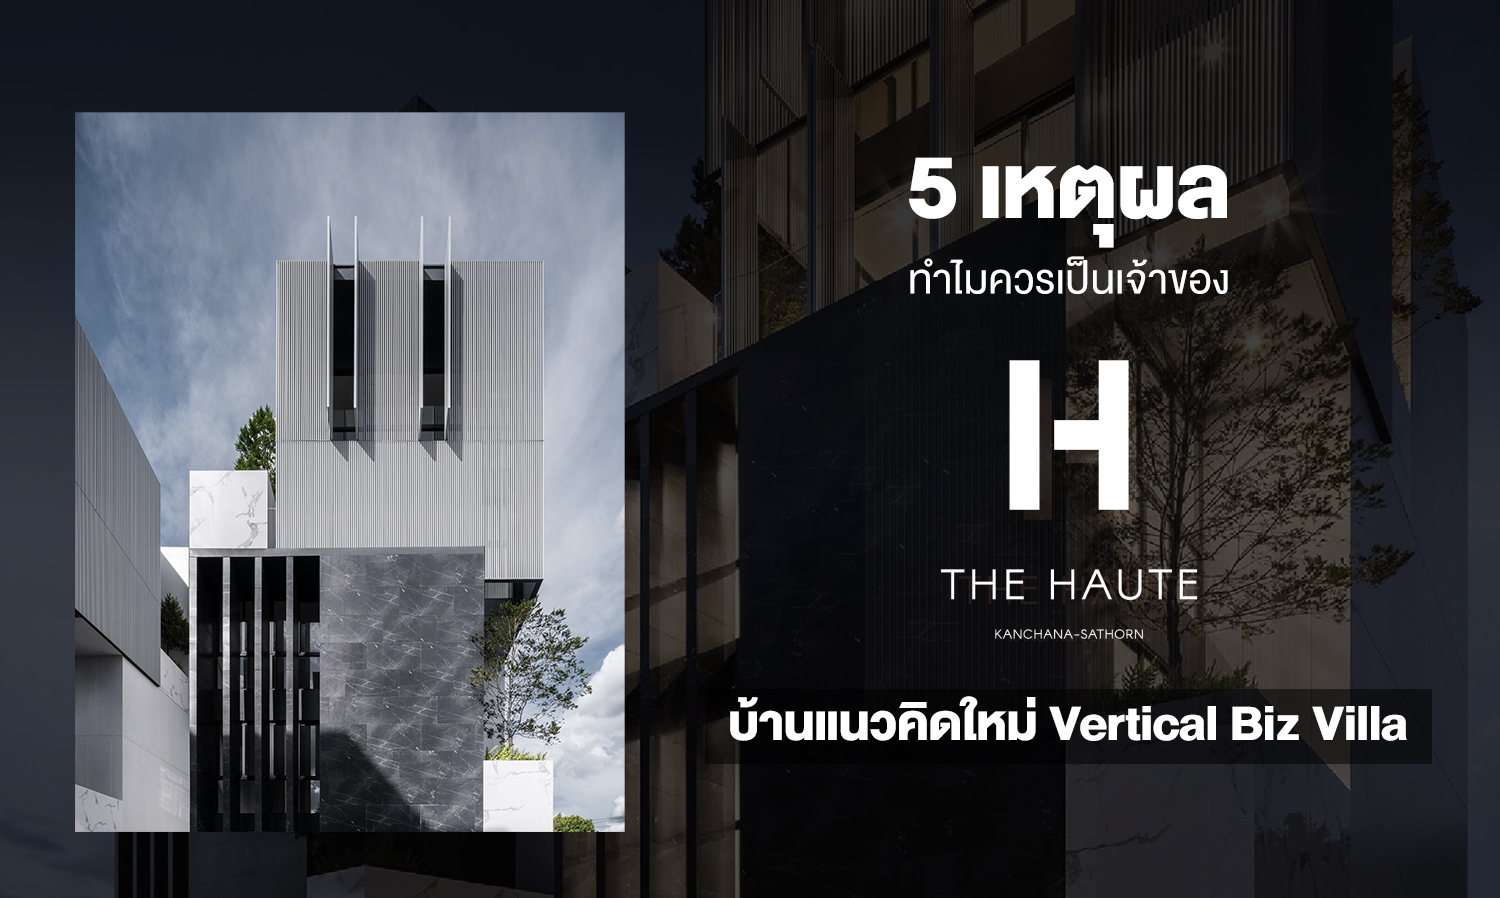 5 เหตุผล ทำไมควรเป็นเจ้าของ The Haute กาญจนา-สาทร  บ้านแนวคิดใหม่ Vertical Biz Villa